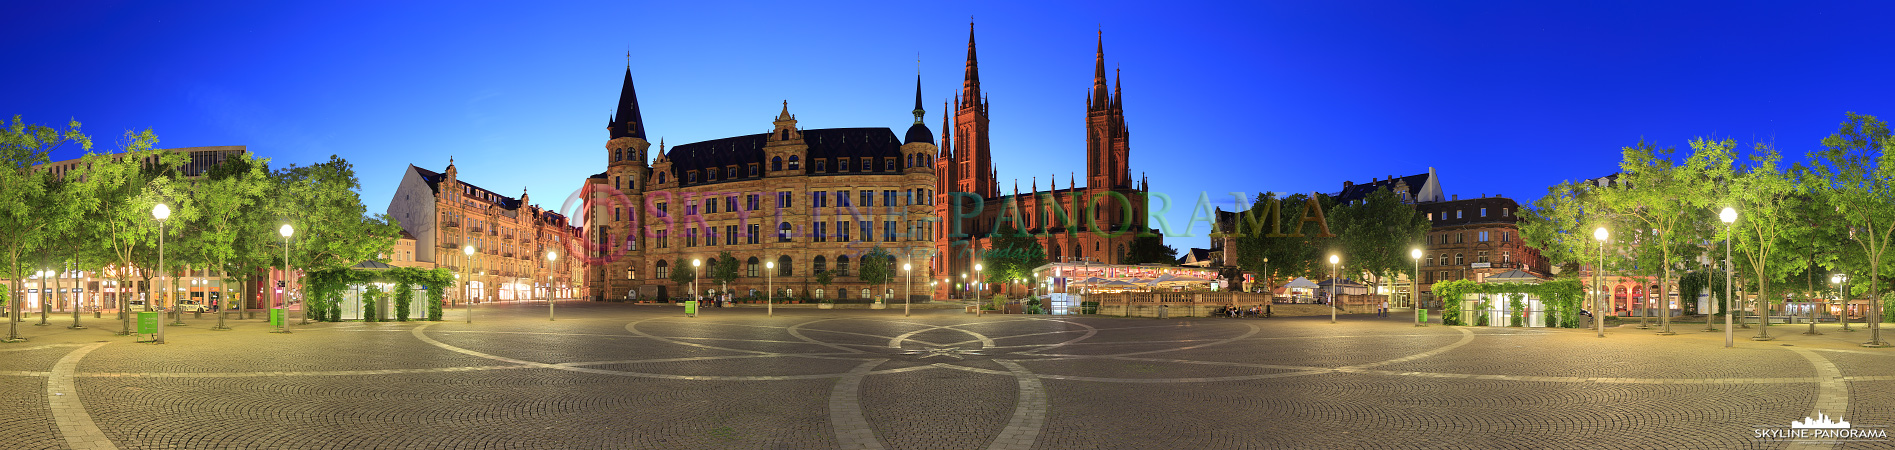 Wiesbaden – Marktplatz (p_00695)